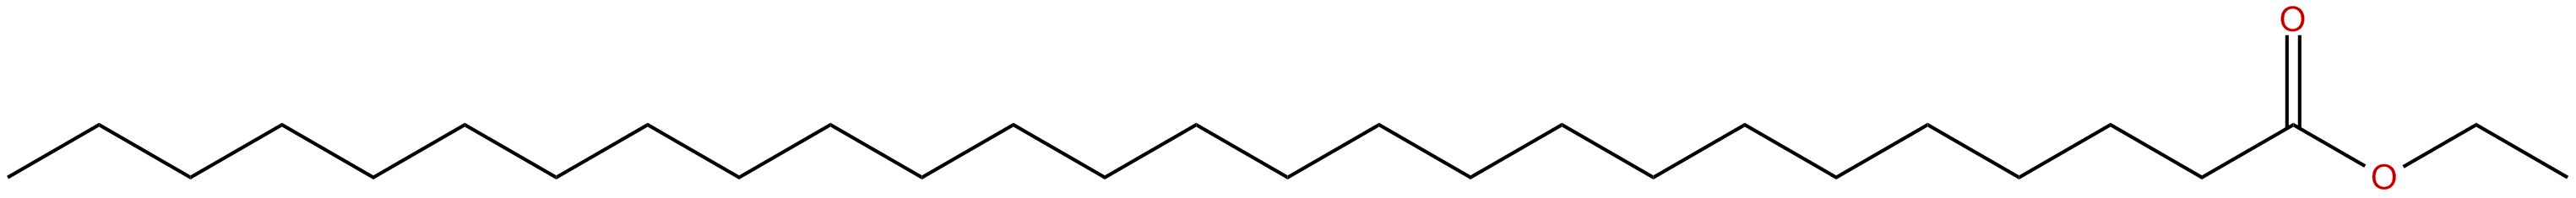 Image of ethyl hexacosanoate